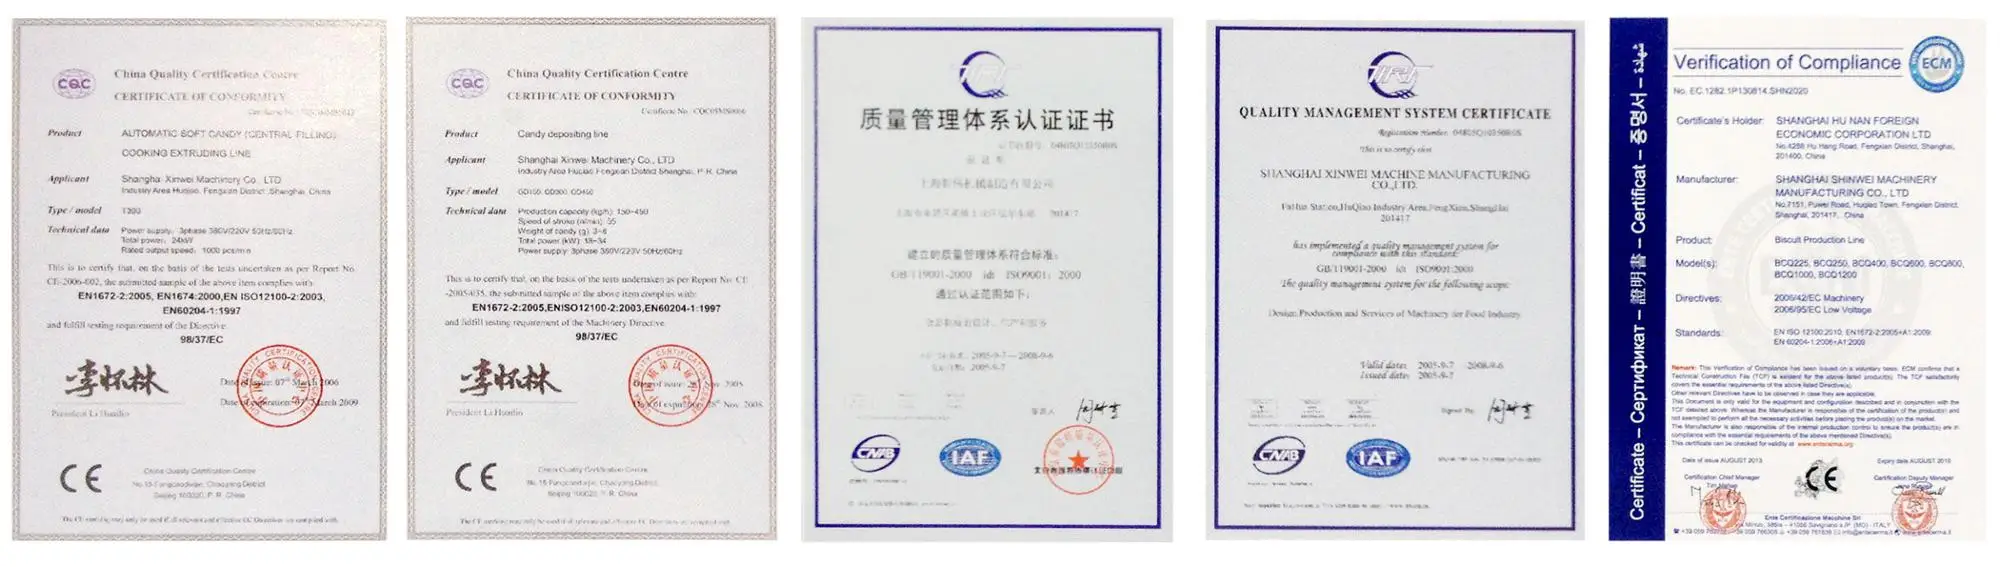 Сертификат CQC. Sec certificate